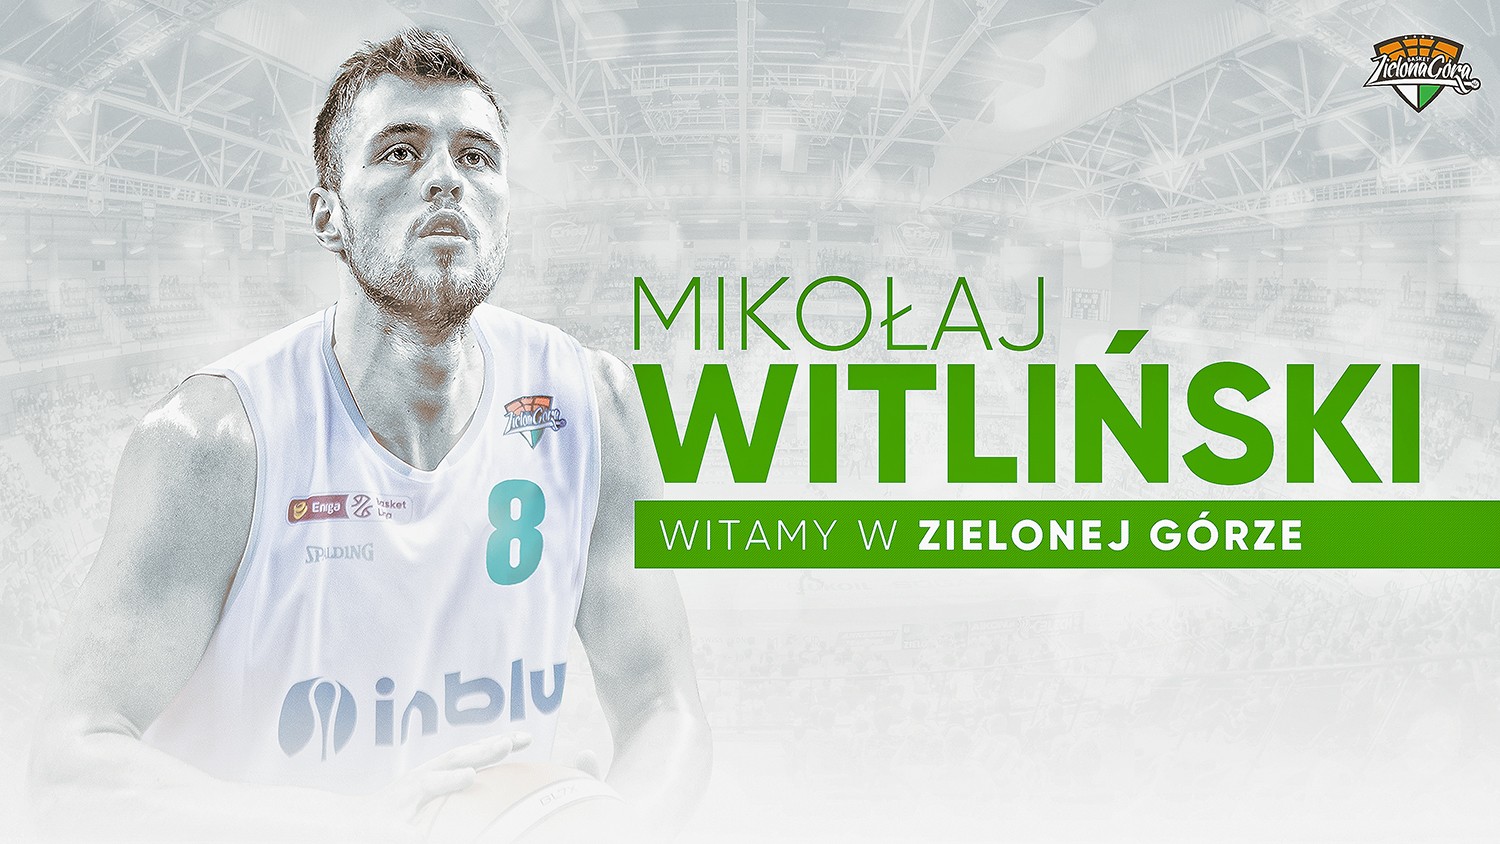 Mikołaj Witliński zawodnikiem Stelmetu Enea BC Zielona Góra.